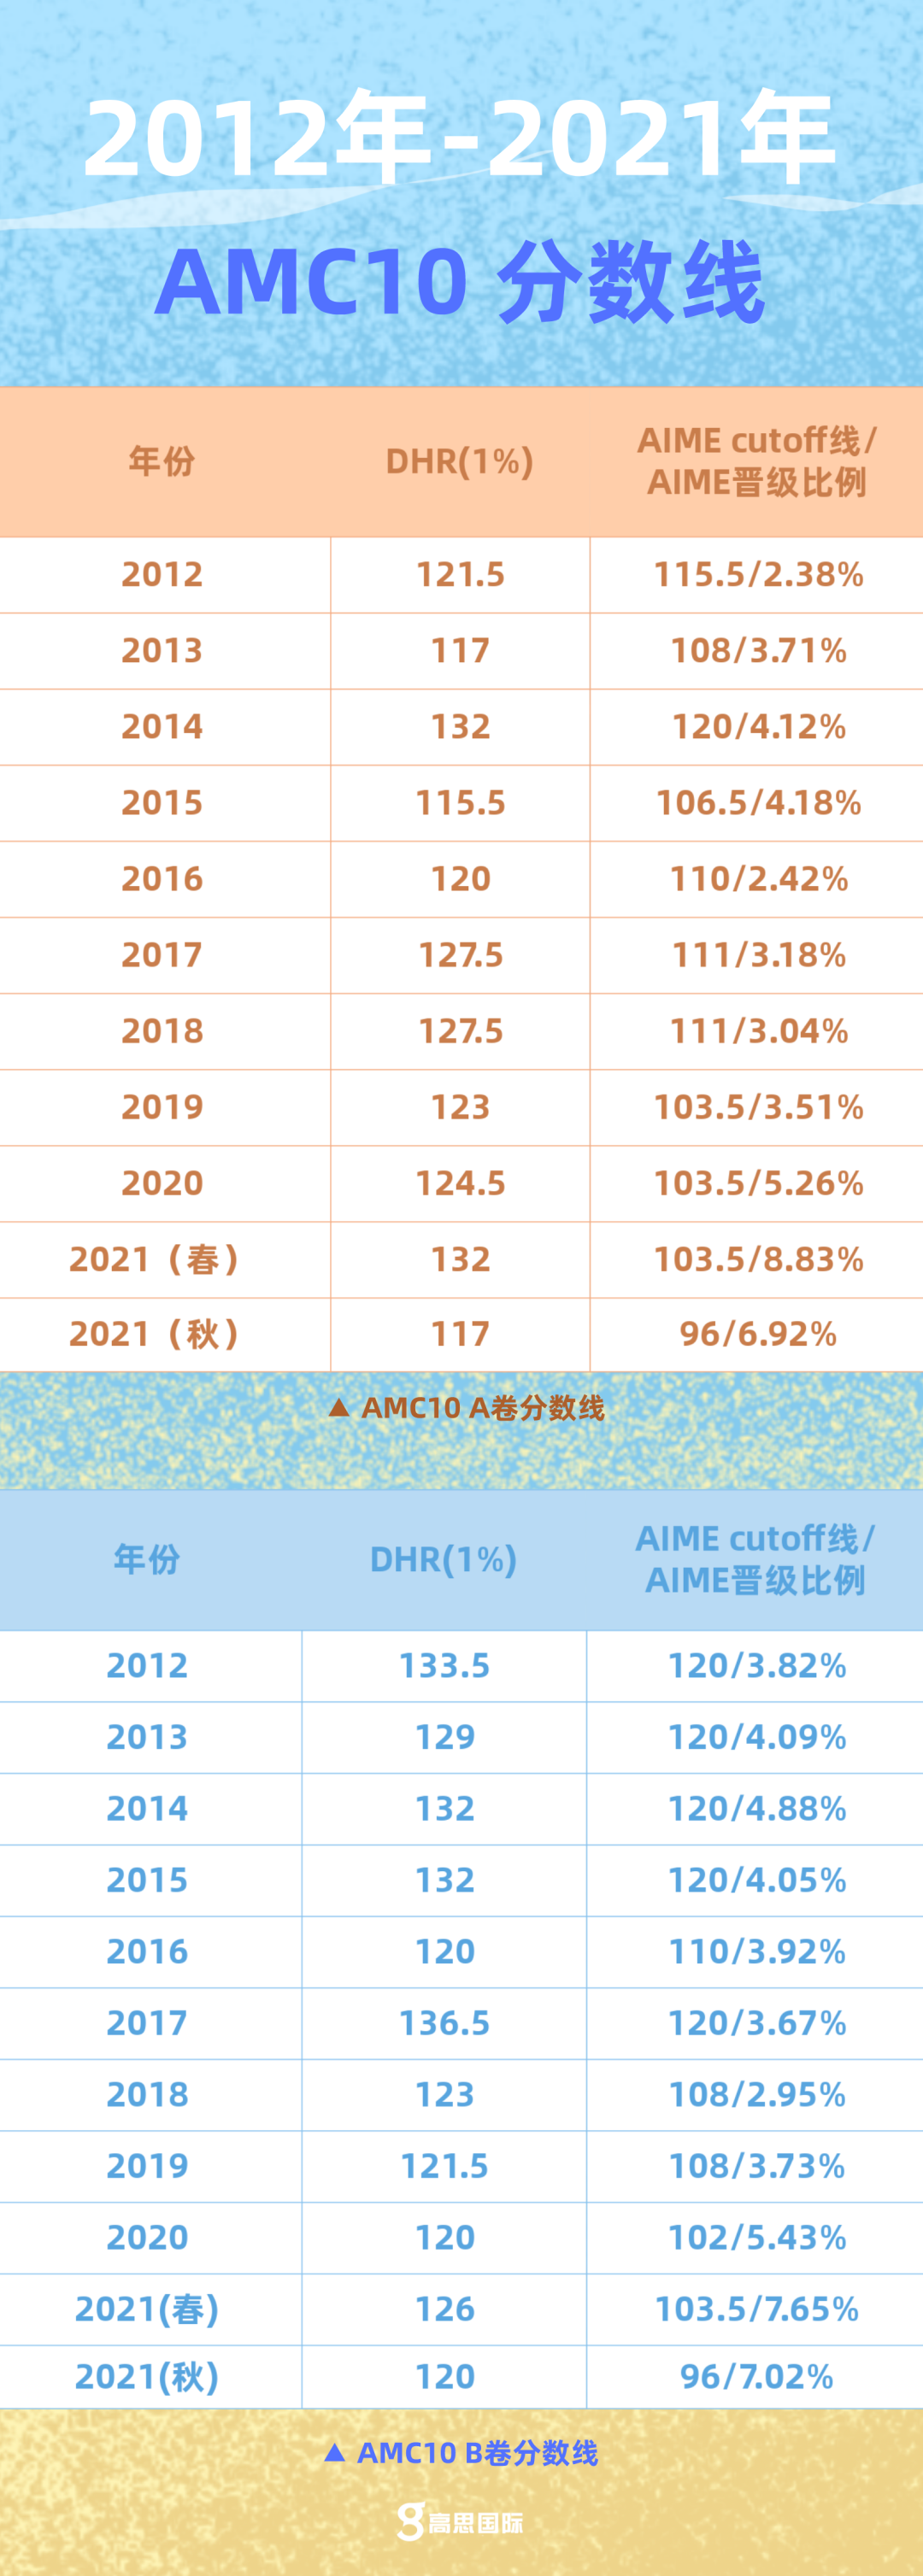 【必读】AMC10晋级AIME比例最低2.42%，最高8.83%! 你也想通过？秘诀看这里